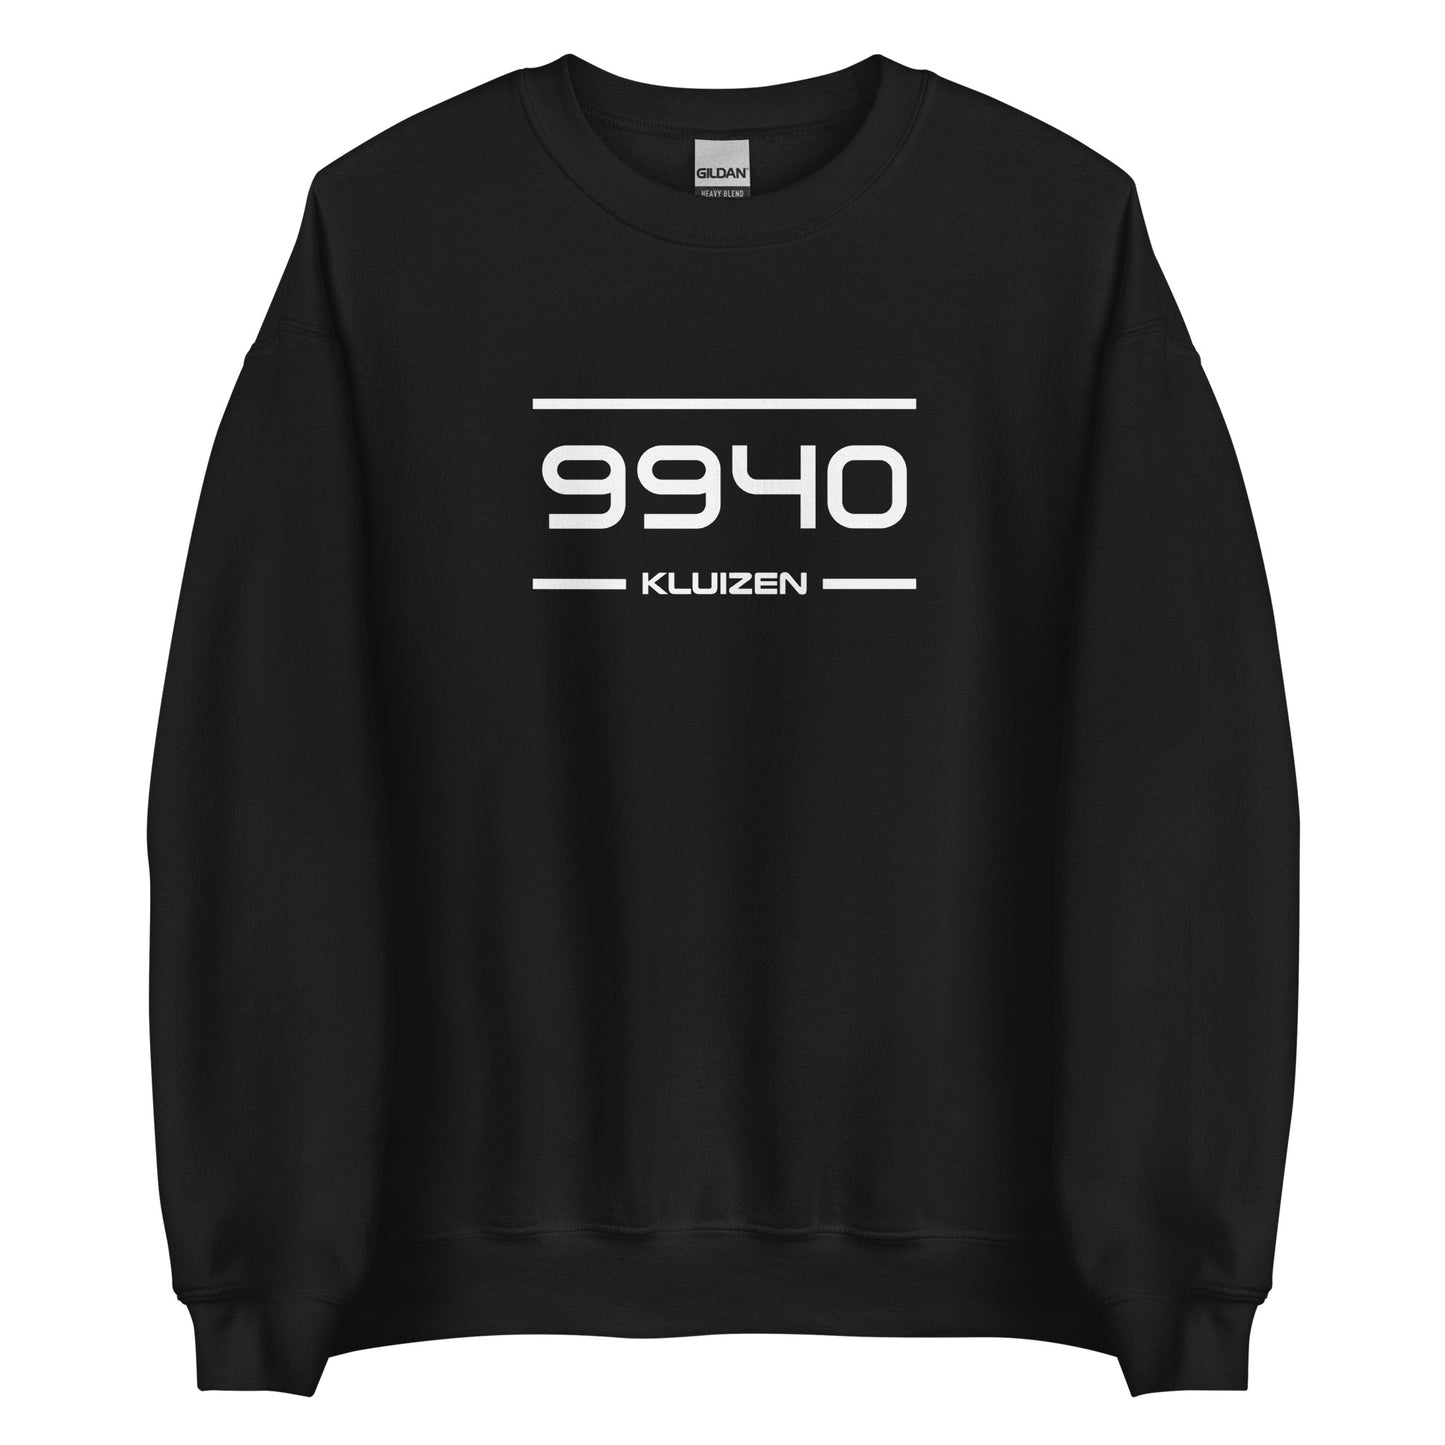 Sweater - 9940 - Kluizen (M/V)